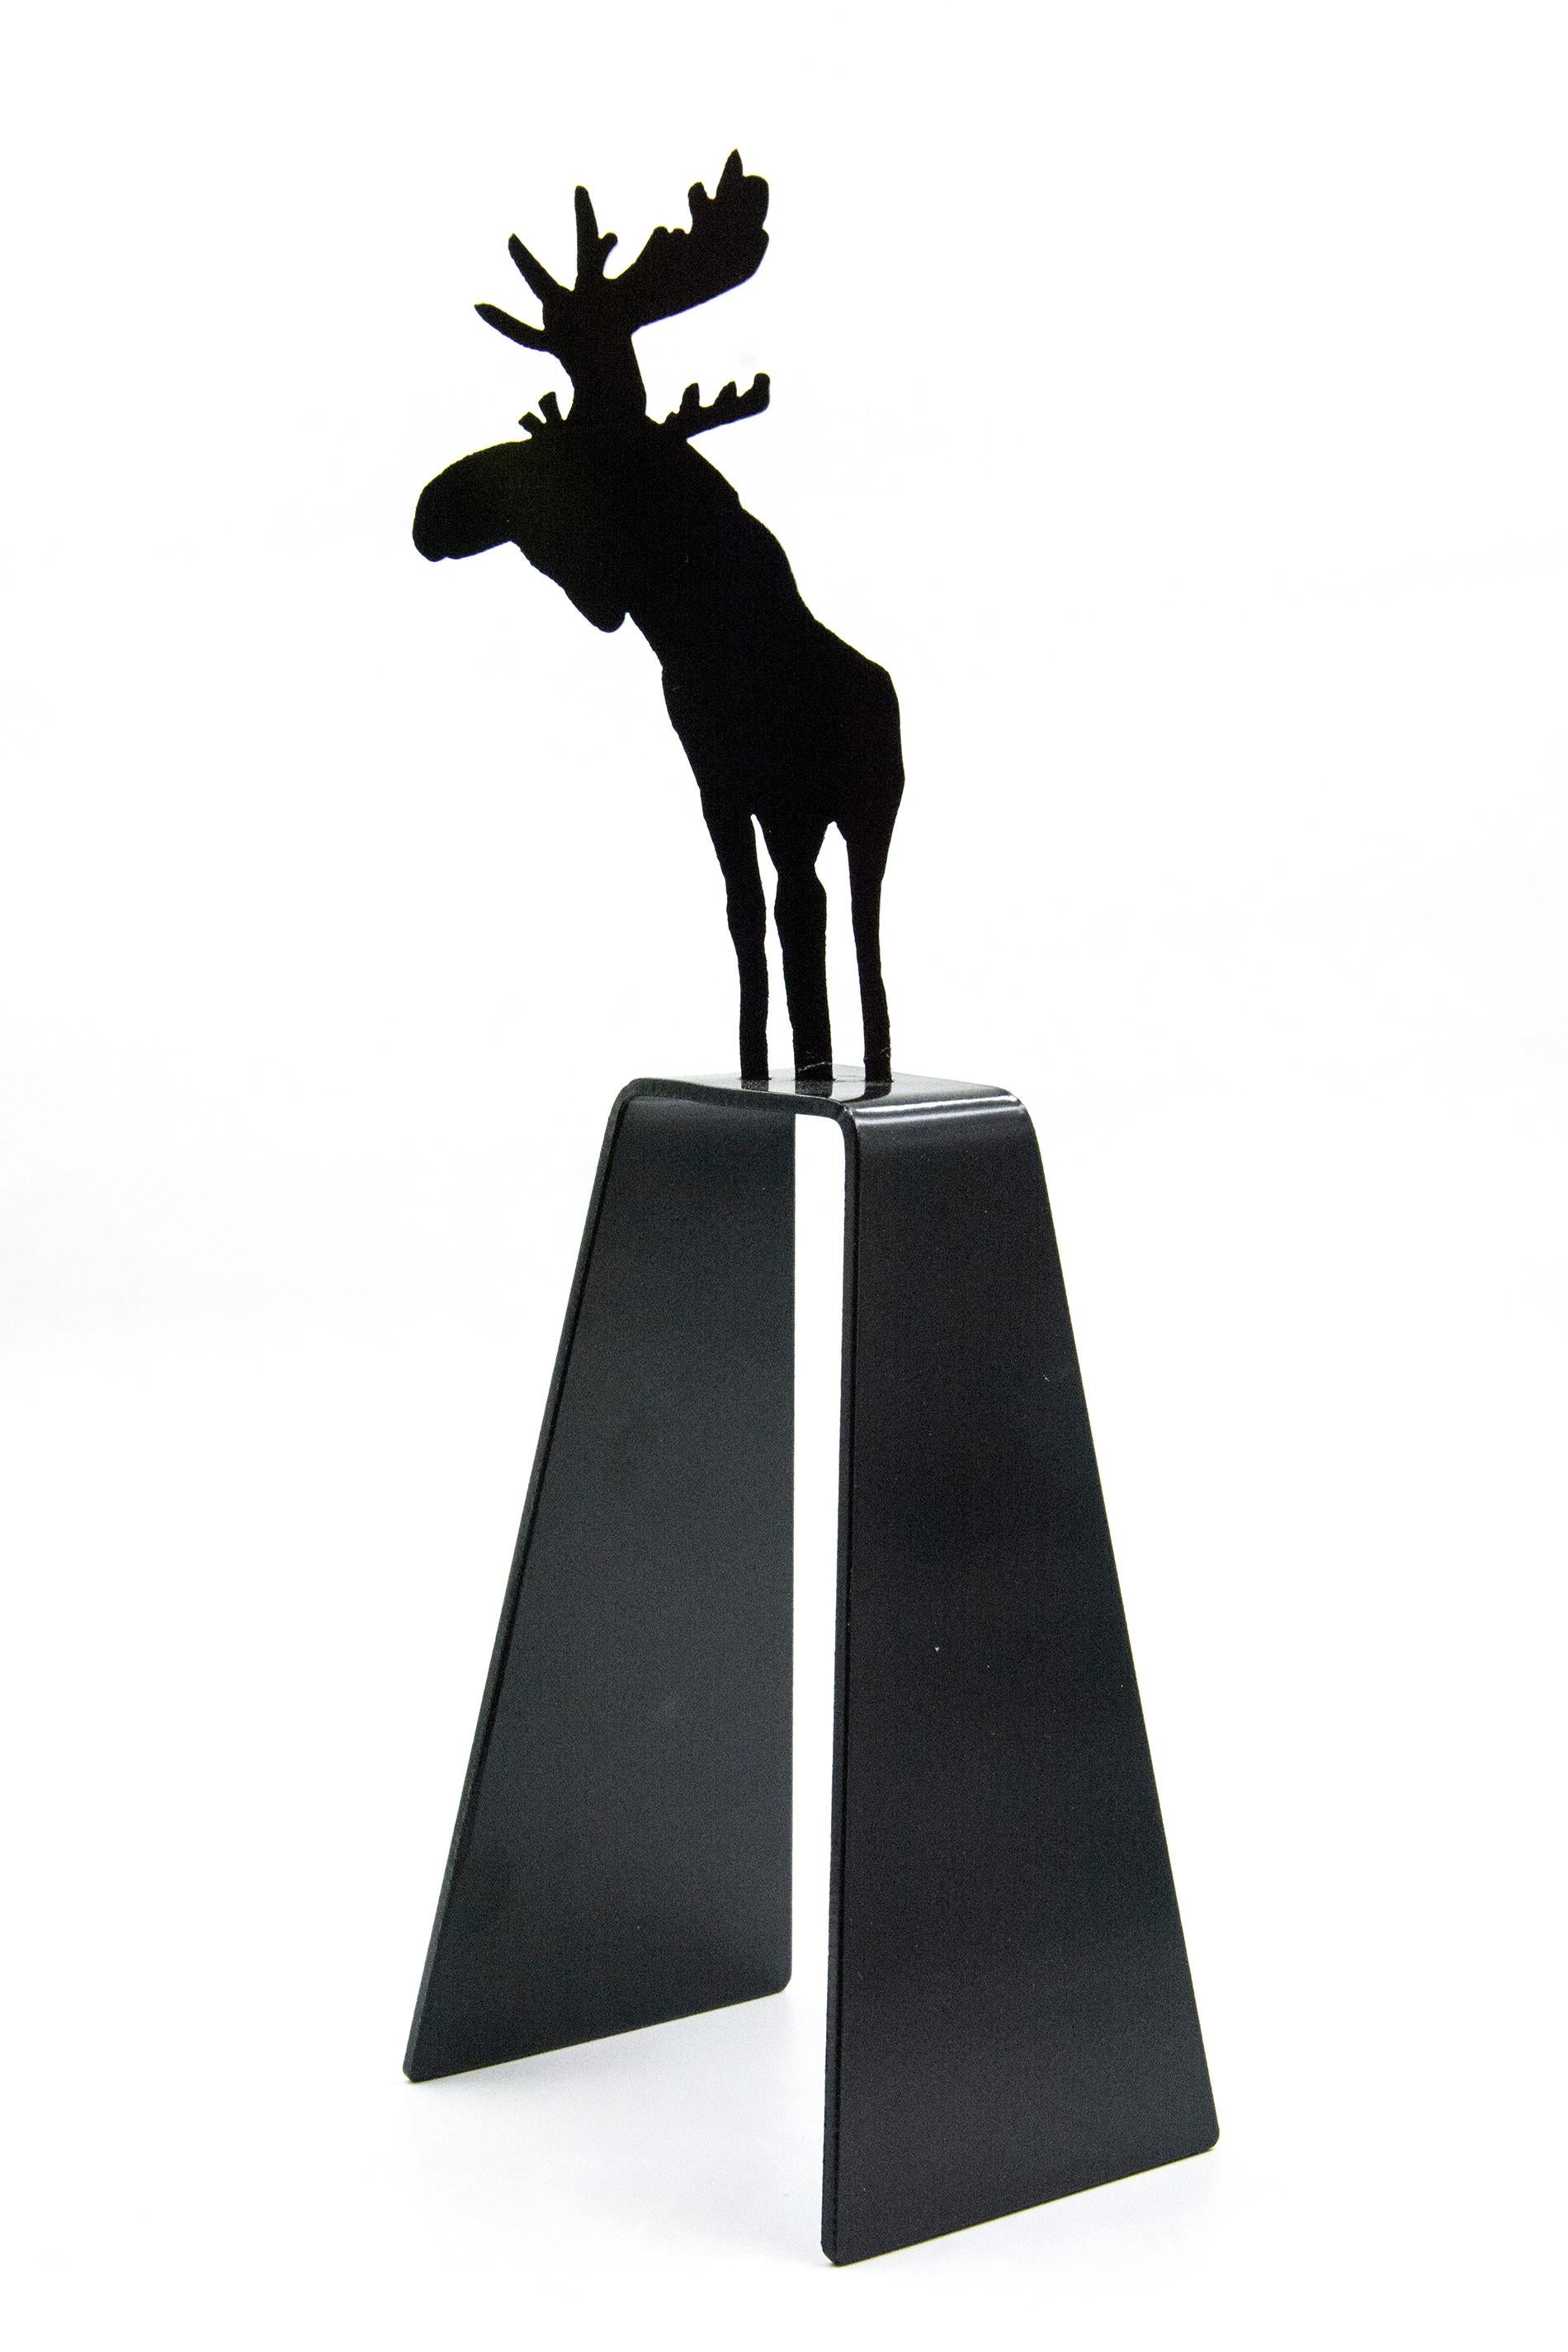 Charles Pachter Figurative Sculpture - Mooseconstrue 1/4 - small, playful, pop art, Canadian, aluminum sculpture